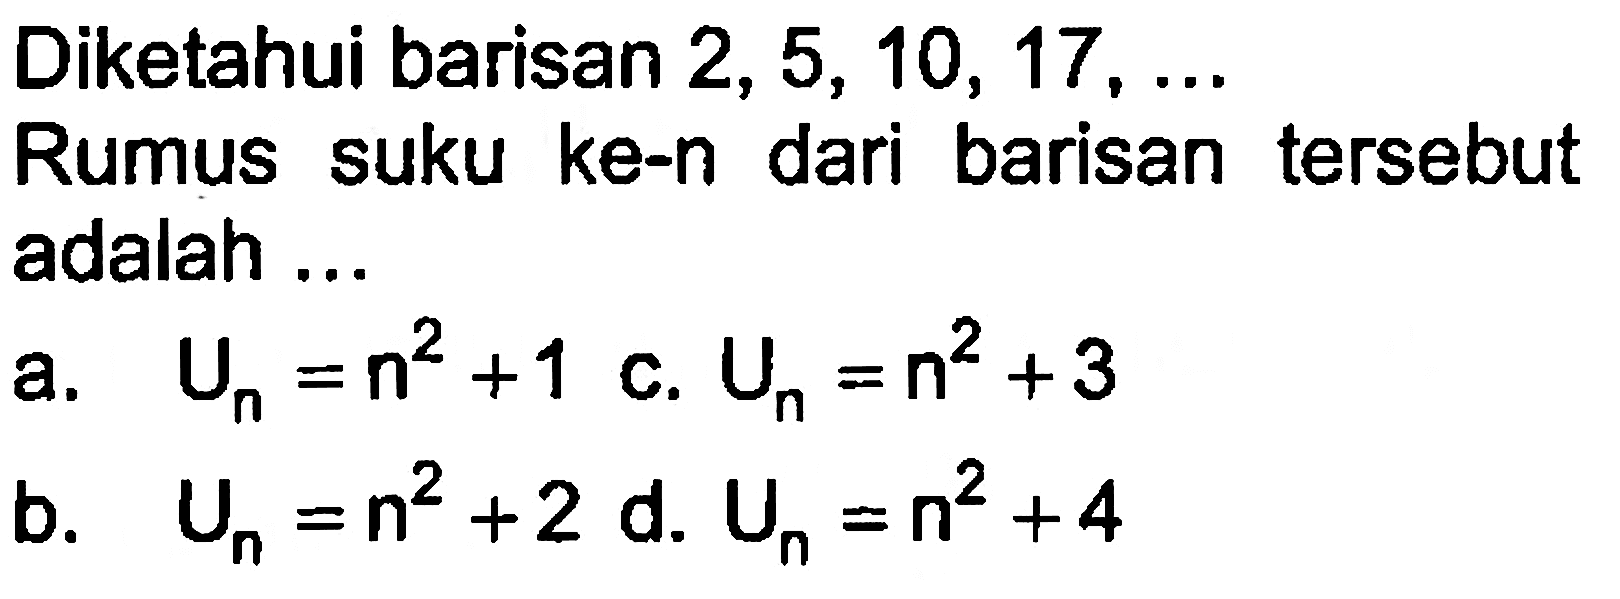 Diketahui barisan 2, 5, 10, 17, ... Rumus suku ke-n dari barisan tersebut adalah ... a. U_n = n^2 + 1 b. U_n = n^2 + 2 c. U_n = n^2 + 3 d. U_n = n^2 + 4